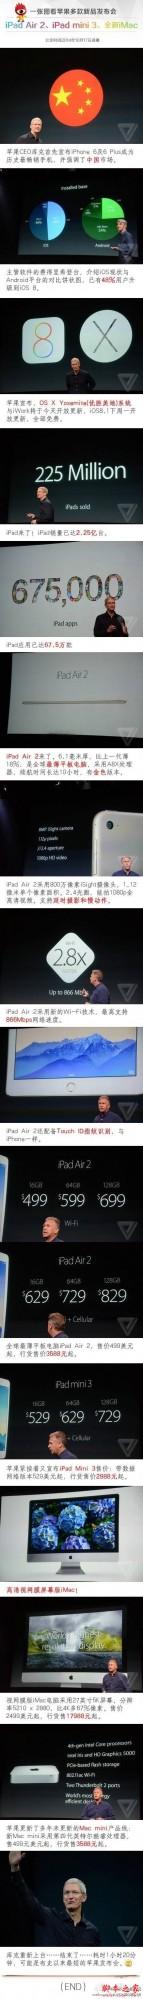 一张图看懂苹果新品发布会ipad air2.mini3.mac全解析